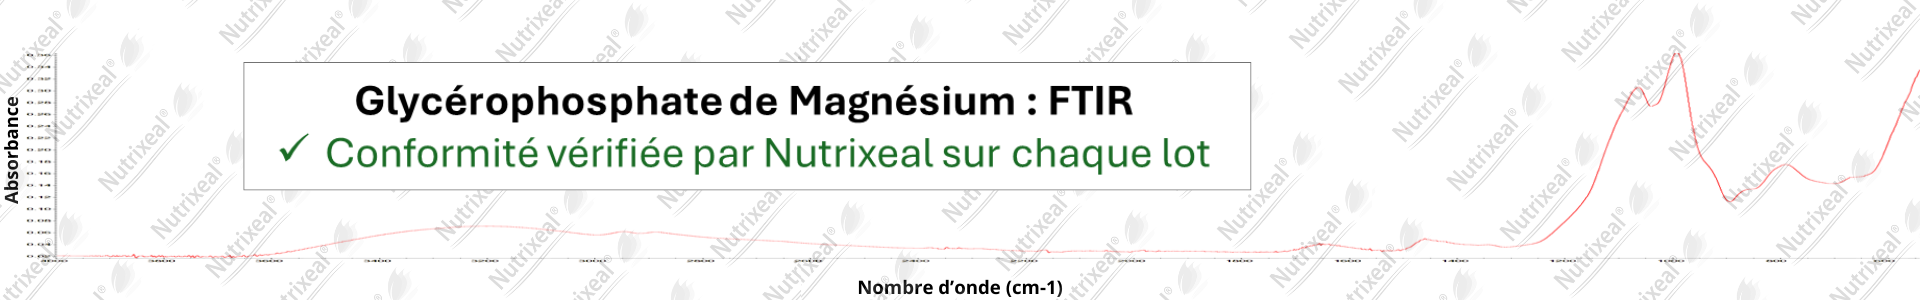 Spectre FTIR du glycérophosphate de magnesium